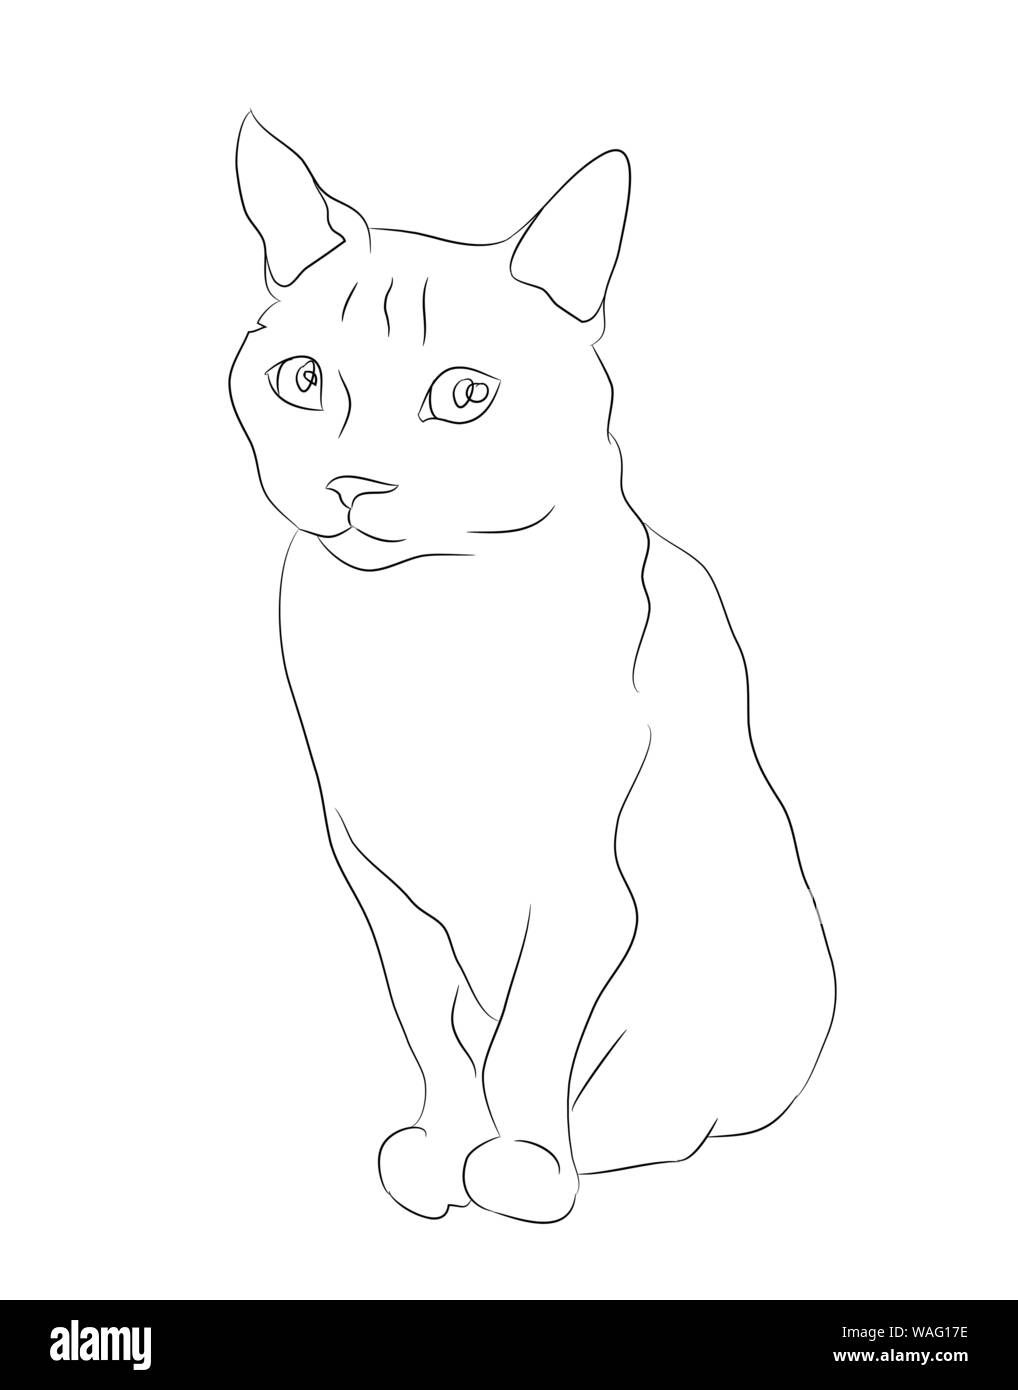 Vector Illustration Katze sitzt, zeichnen Linien, Vector, weißer  Hintergrund Stock-Vektorgrafik - Alamy